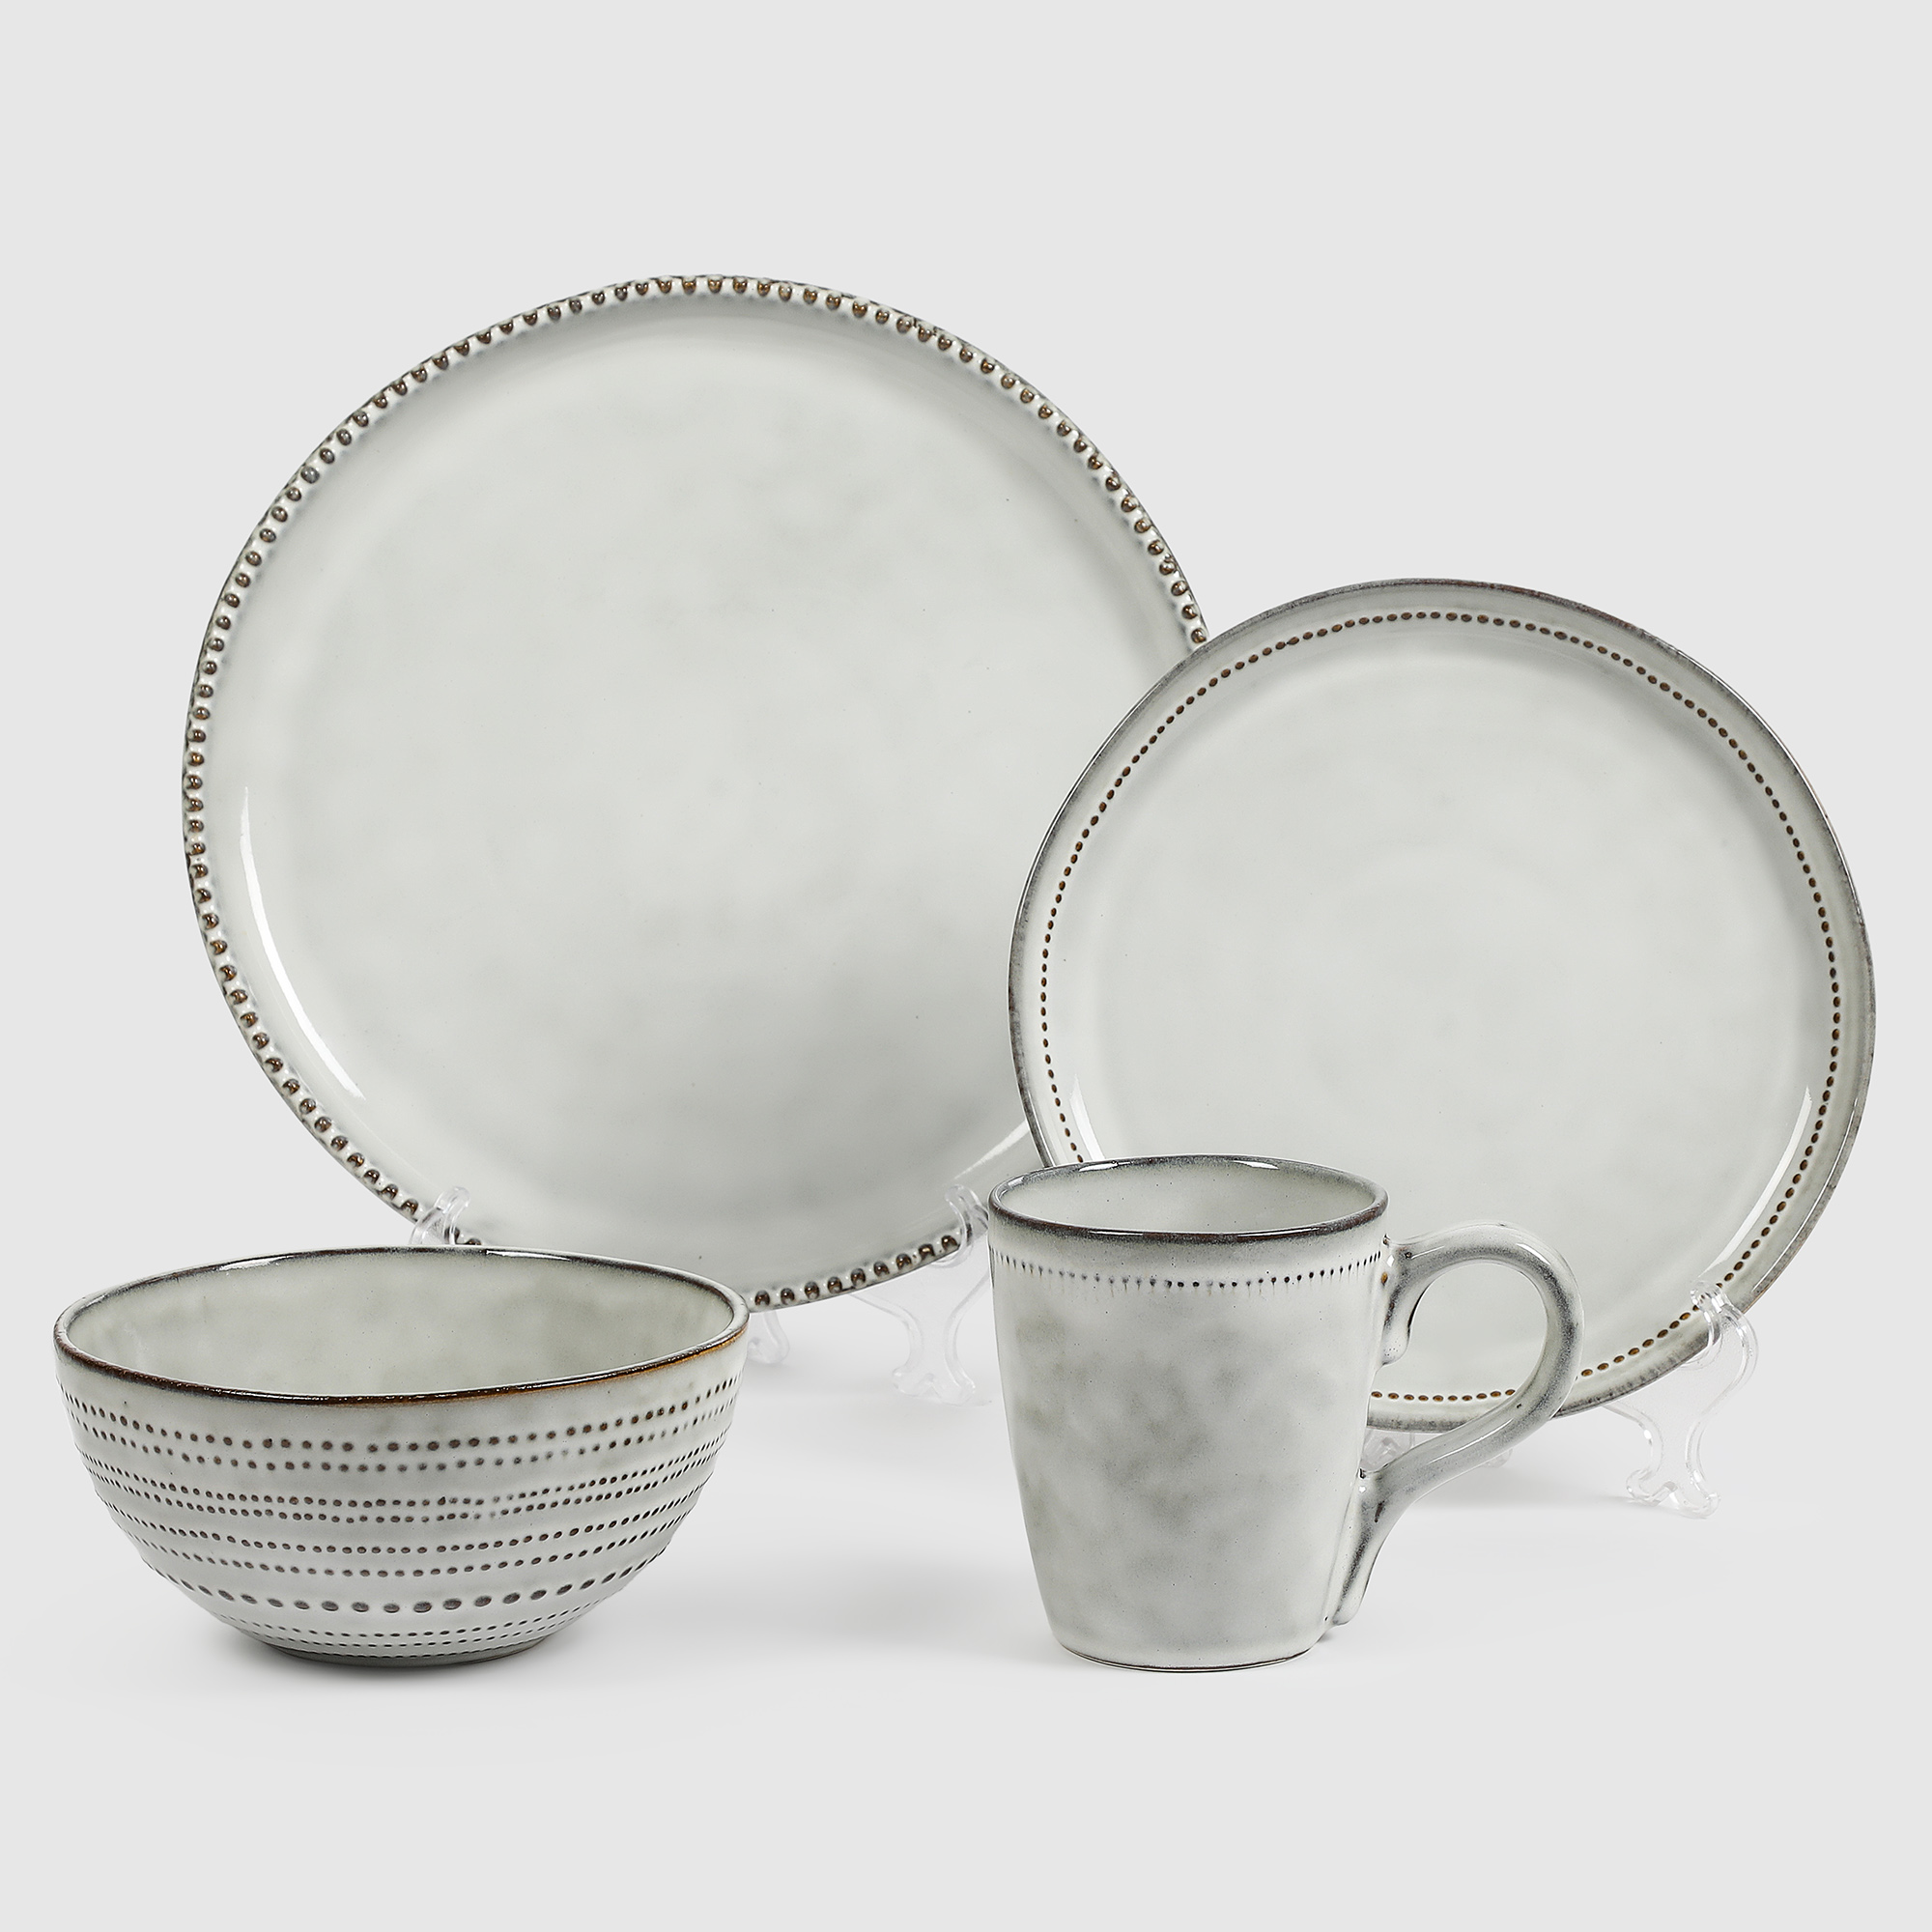 Набор керамической посуды White Rabbit Скандинавия 16 предметов набор кистей для наращивания и дизайна ногтей 6 шт 14 см серебристый